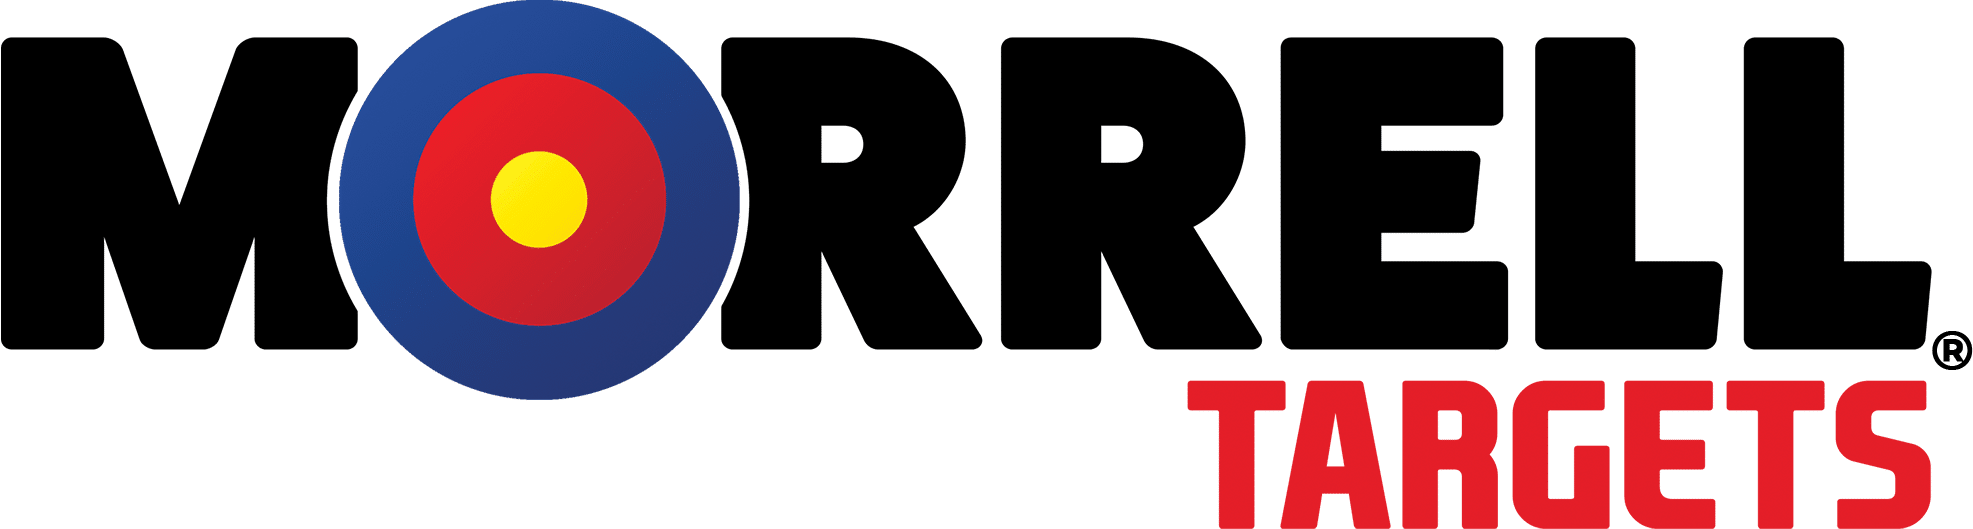 Morrell Targets logo